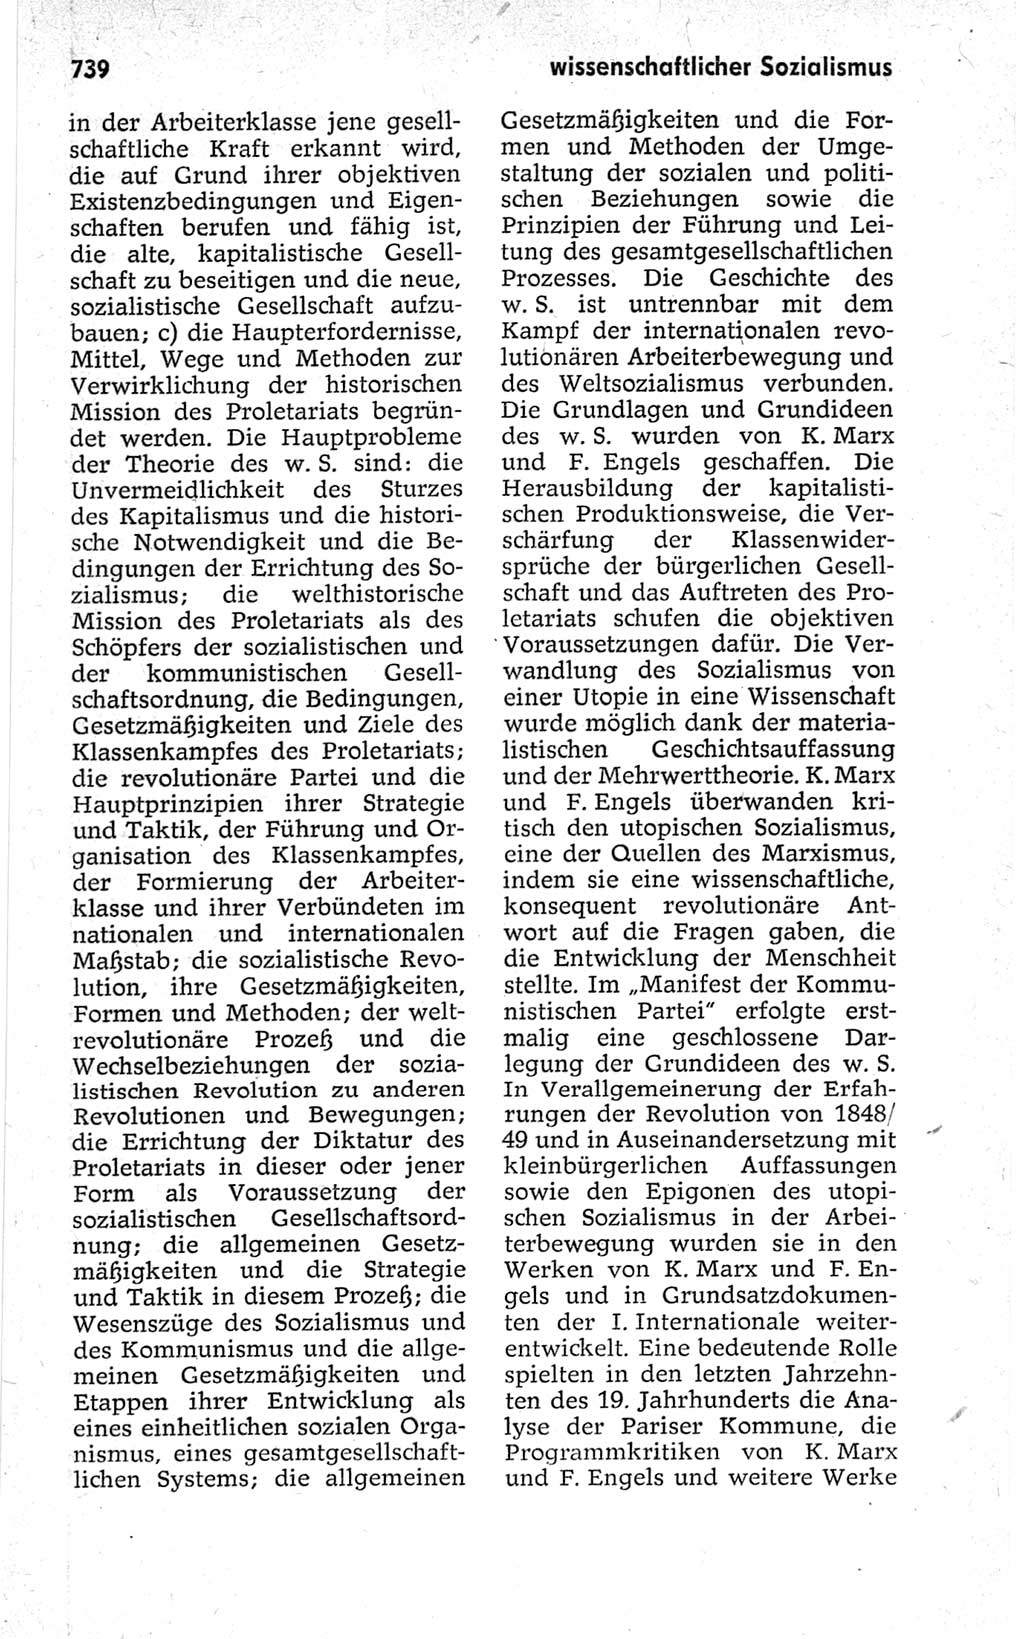 Kleines politisches Wörterbuch [Deutsche Demokratische Republik (DDR)] 1967, Seite 739 (Kl. pol. Wb. DDR 1967, S. 739)